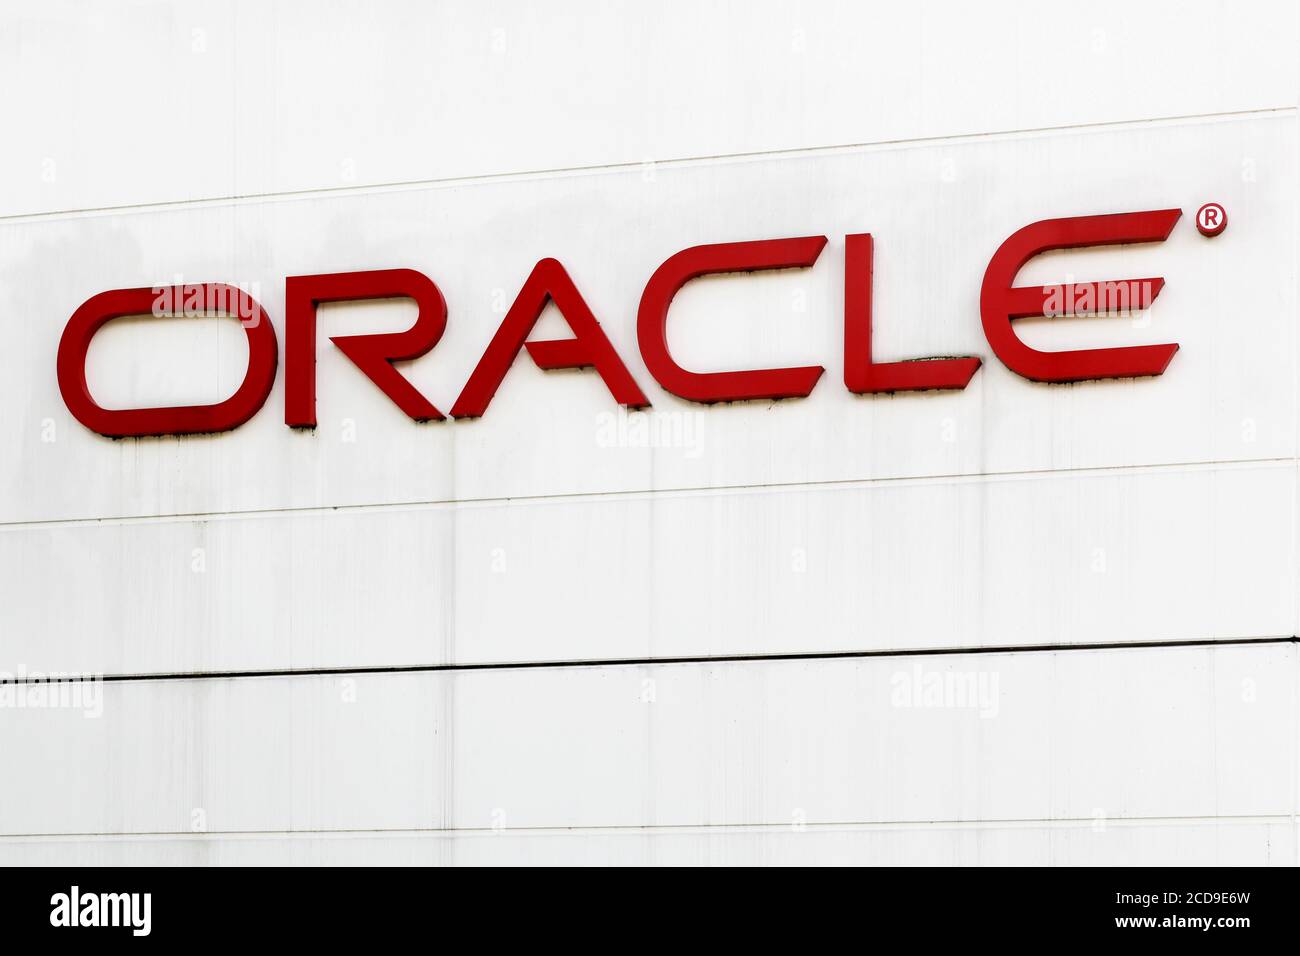 Ballerup, Danemark - 10 septembre 2017 : logo Oracle sur un mur. Oracle Corporation est une multinationale américaine de technologie informatique Banque D'Images